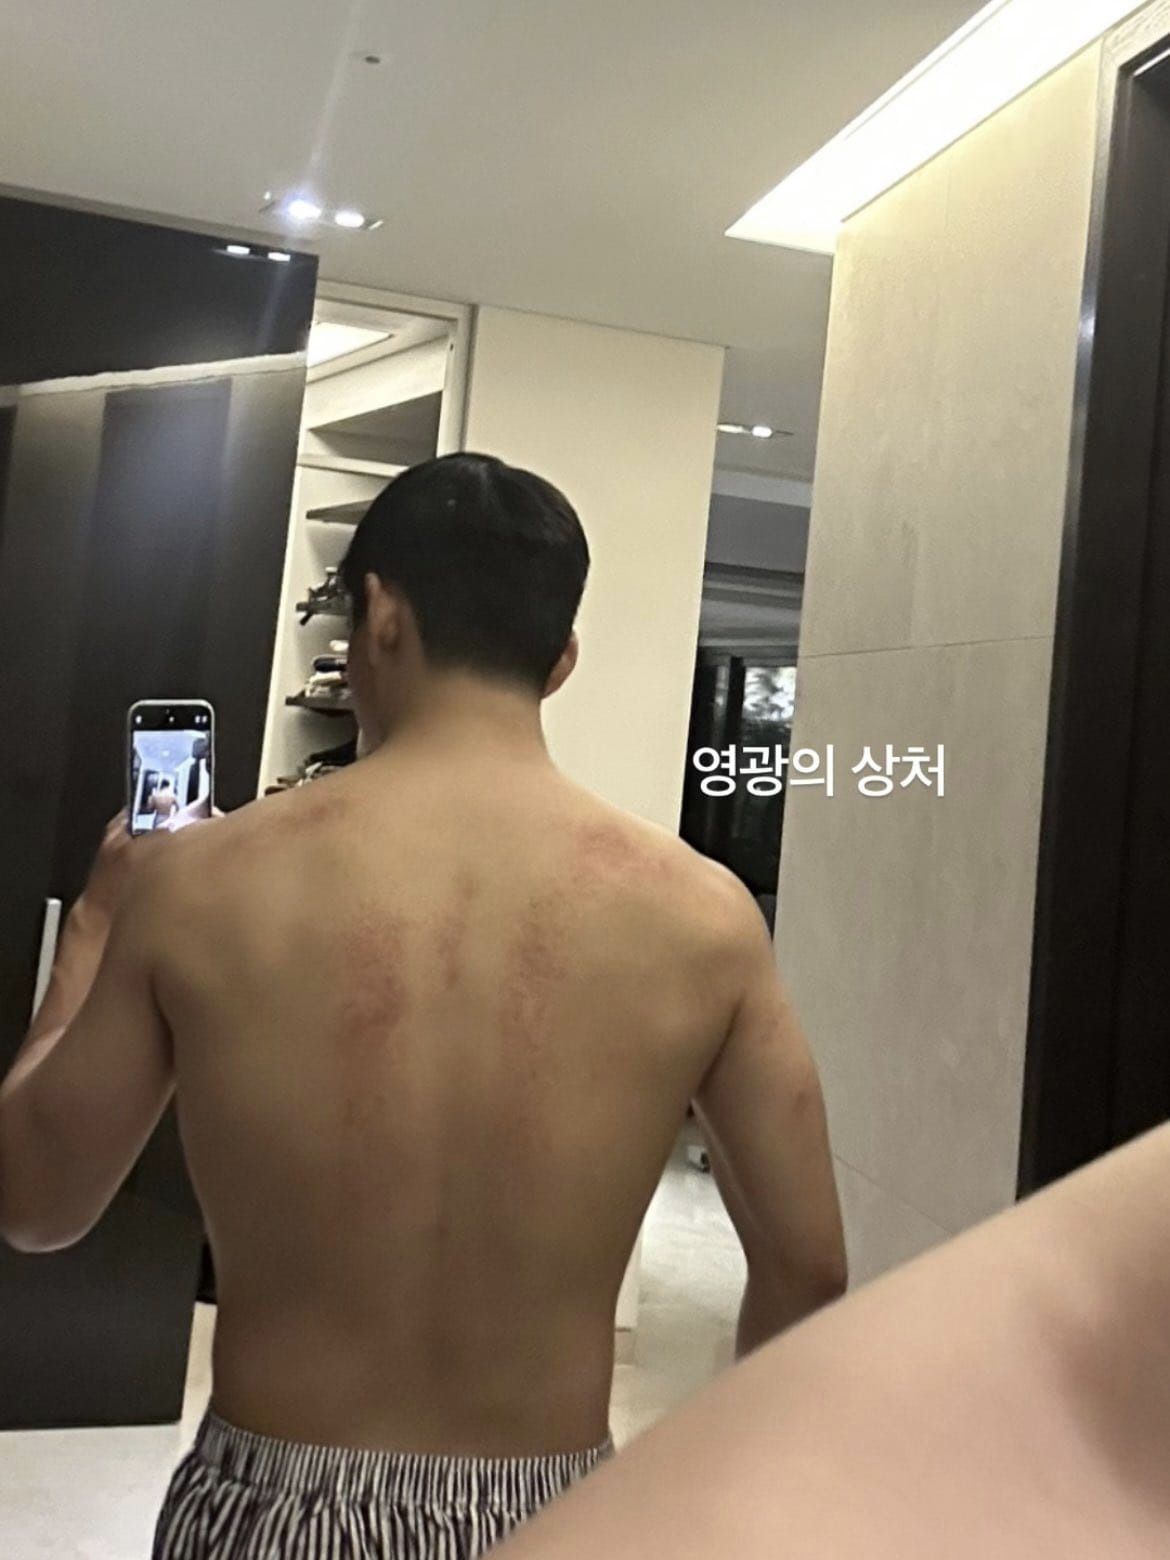 V để lộ những vết thương trên lưng. Ảnh: Instagram